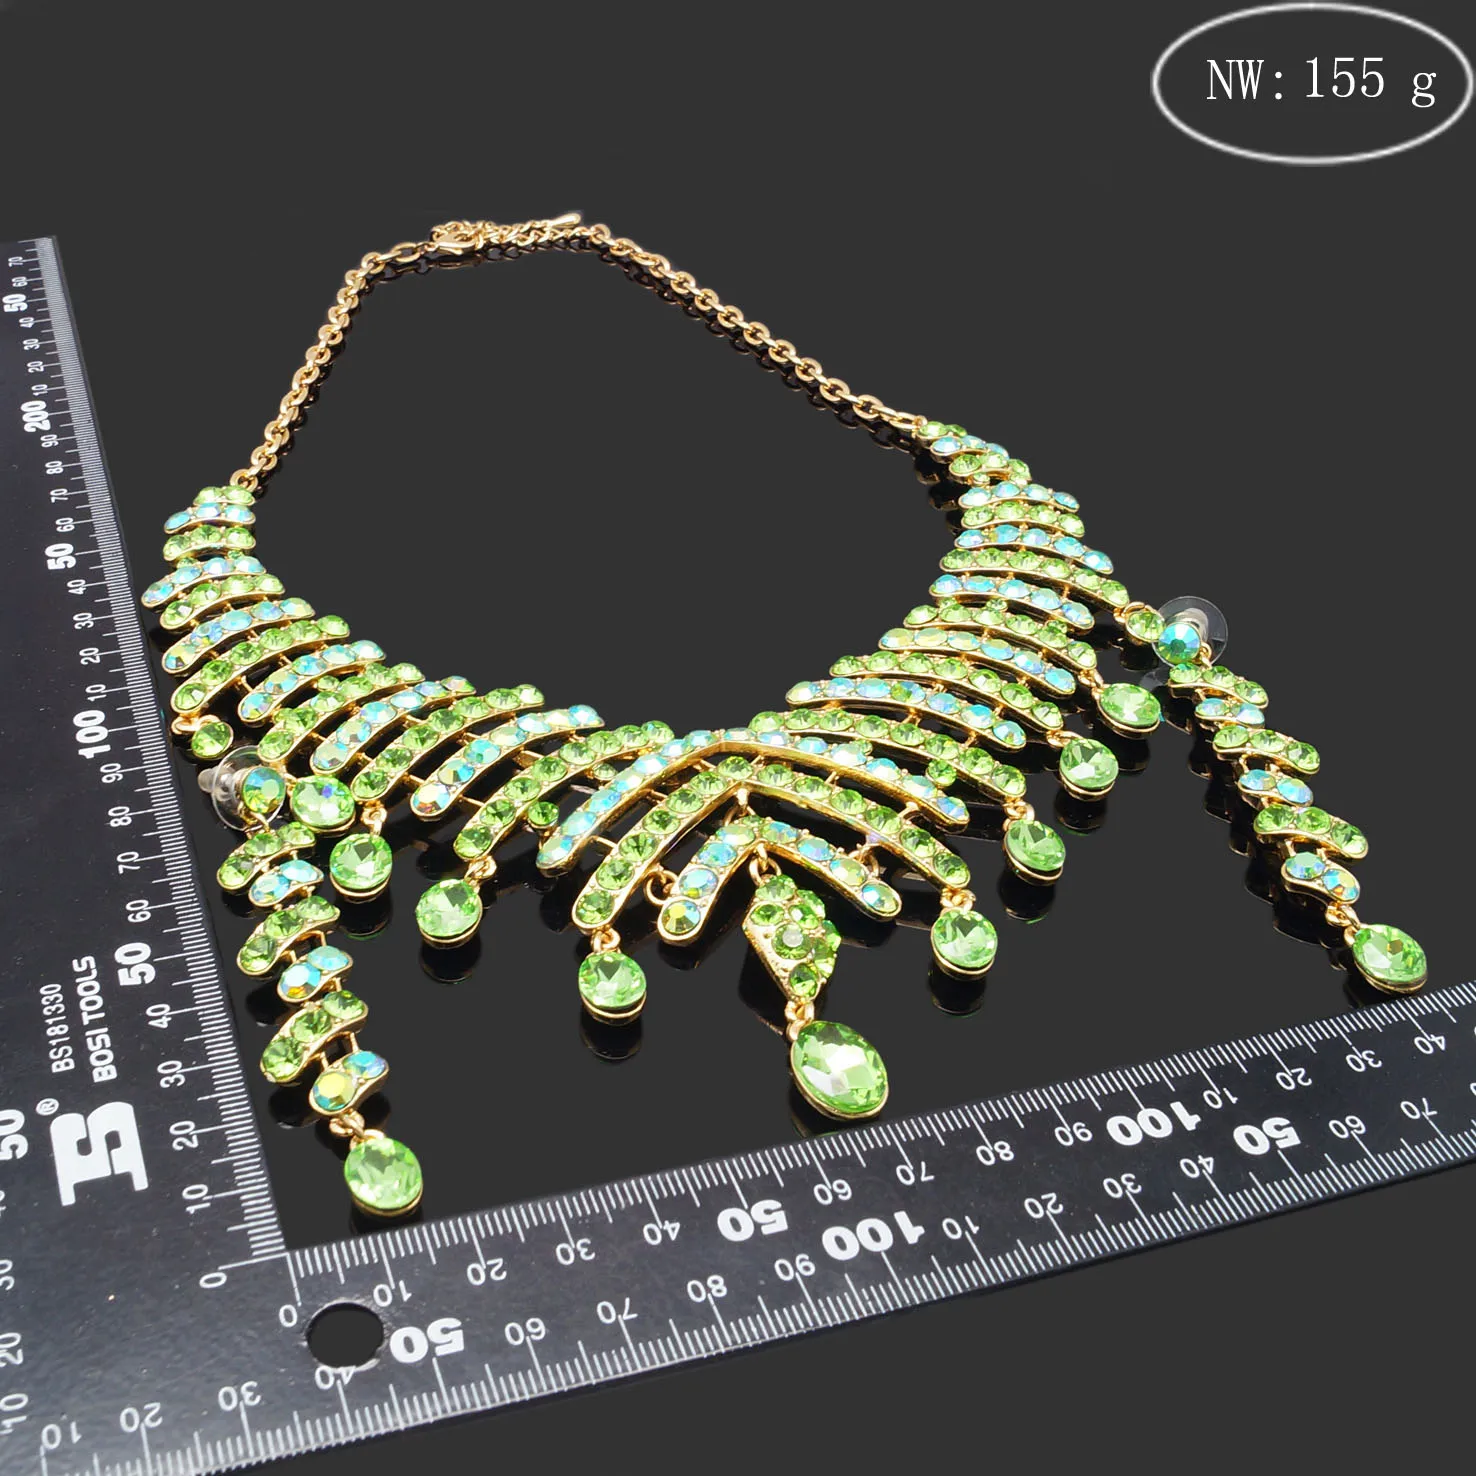  Yulaili оптовая продажа Горячая дизайны зеленый кристалл ожерелье браслет серьги кольцо для свадебной вечеринки повседневной жизни Jewllery наборы